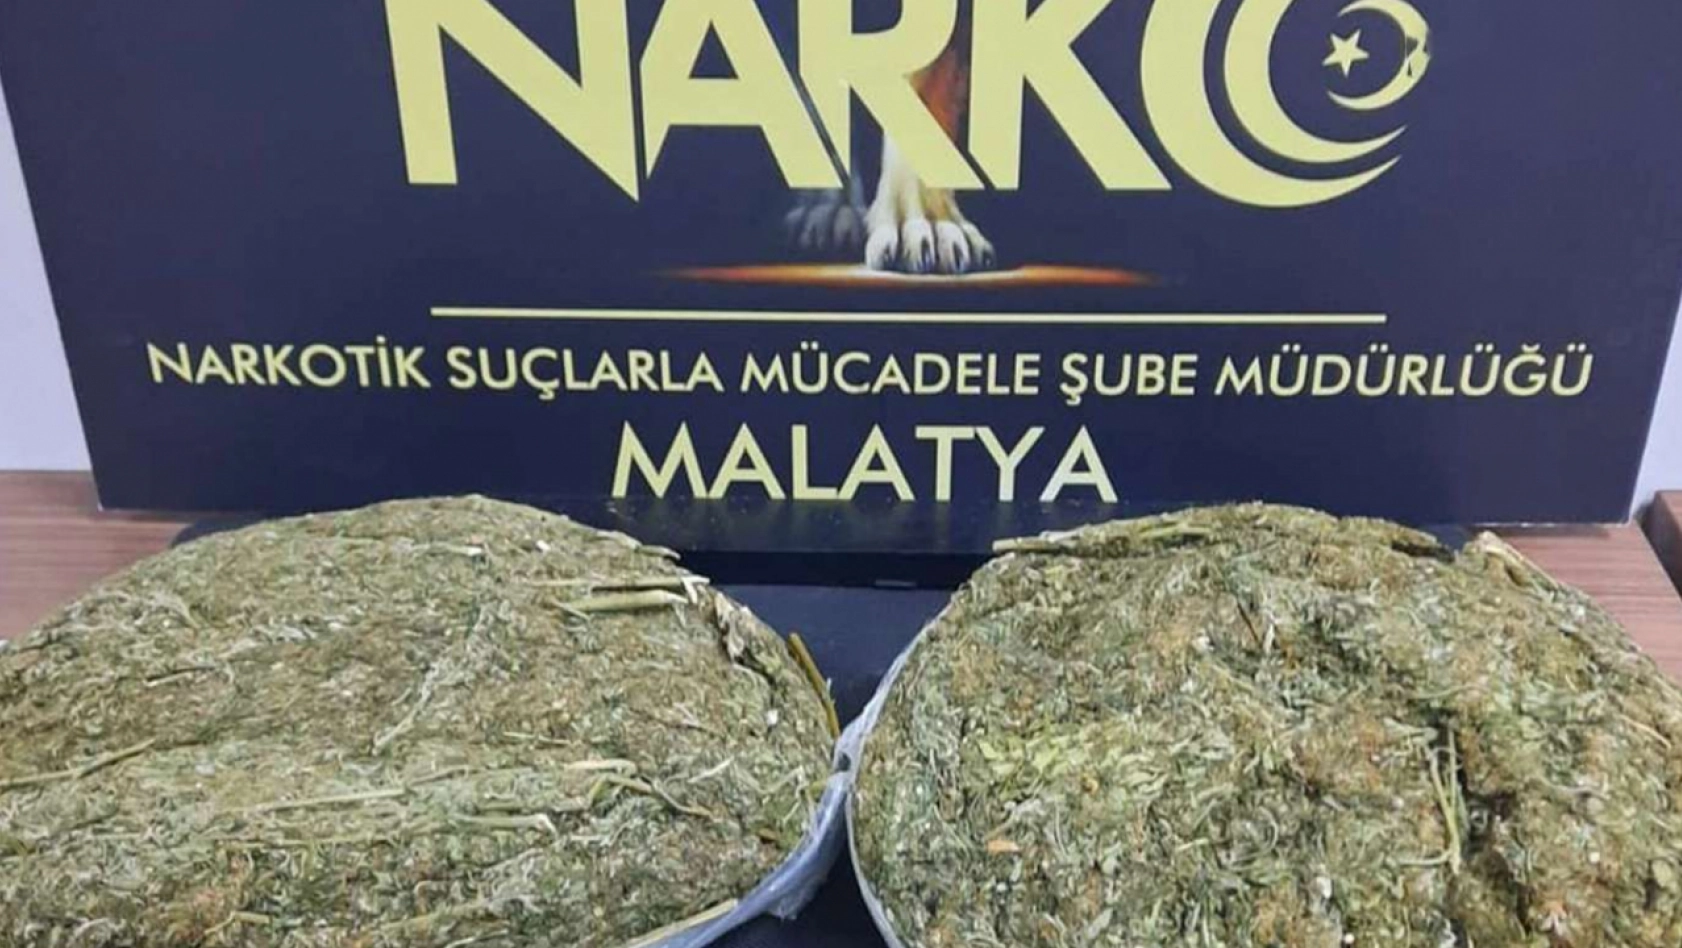 Malatya'da yolcu otobüsünde 23 kilogram uyuşturucu ele geçirildi